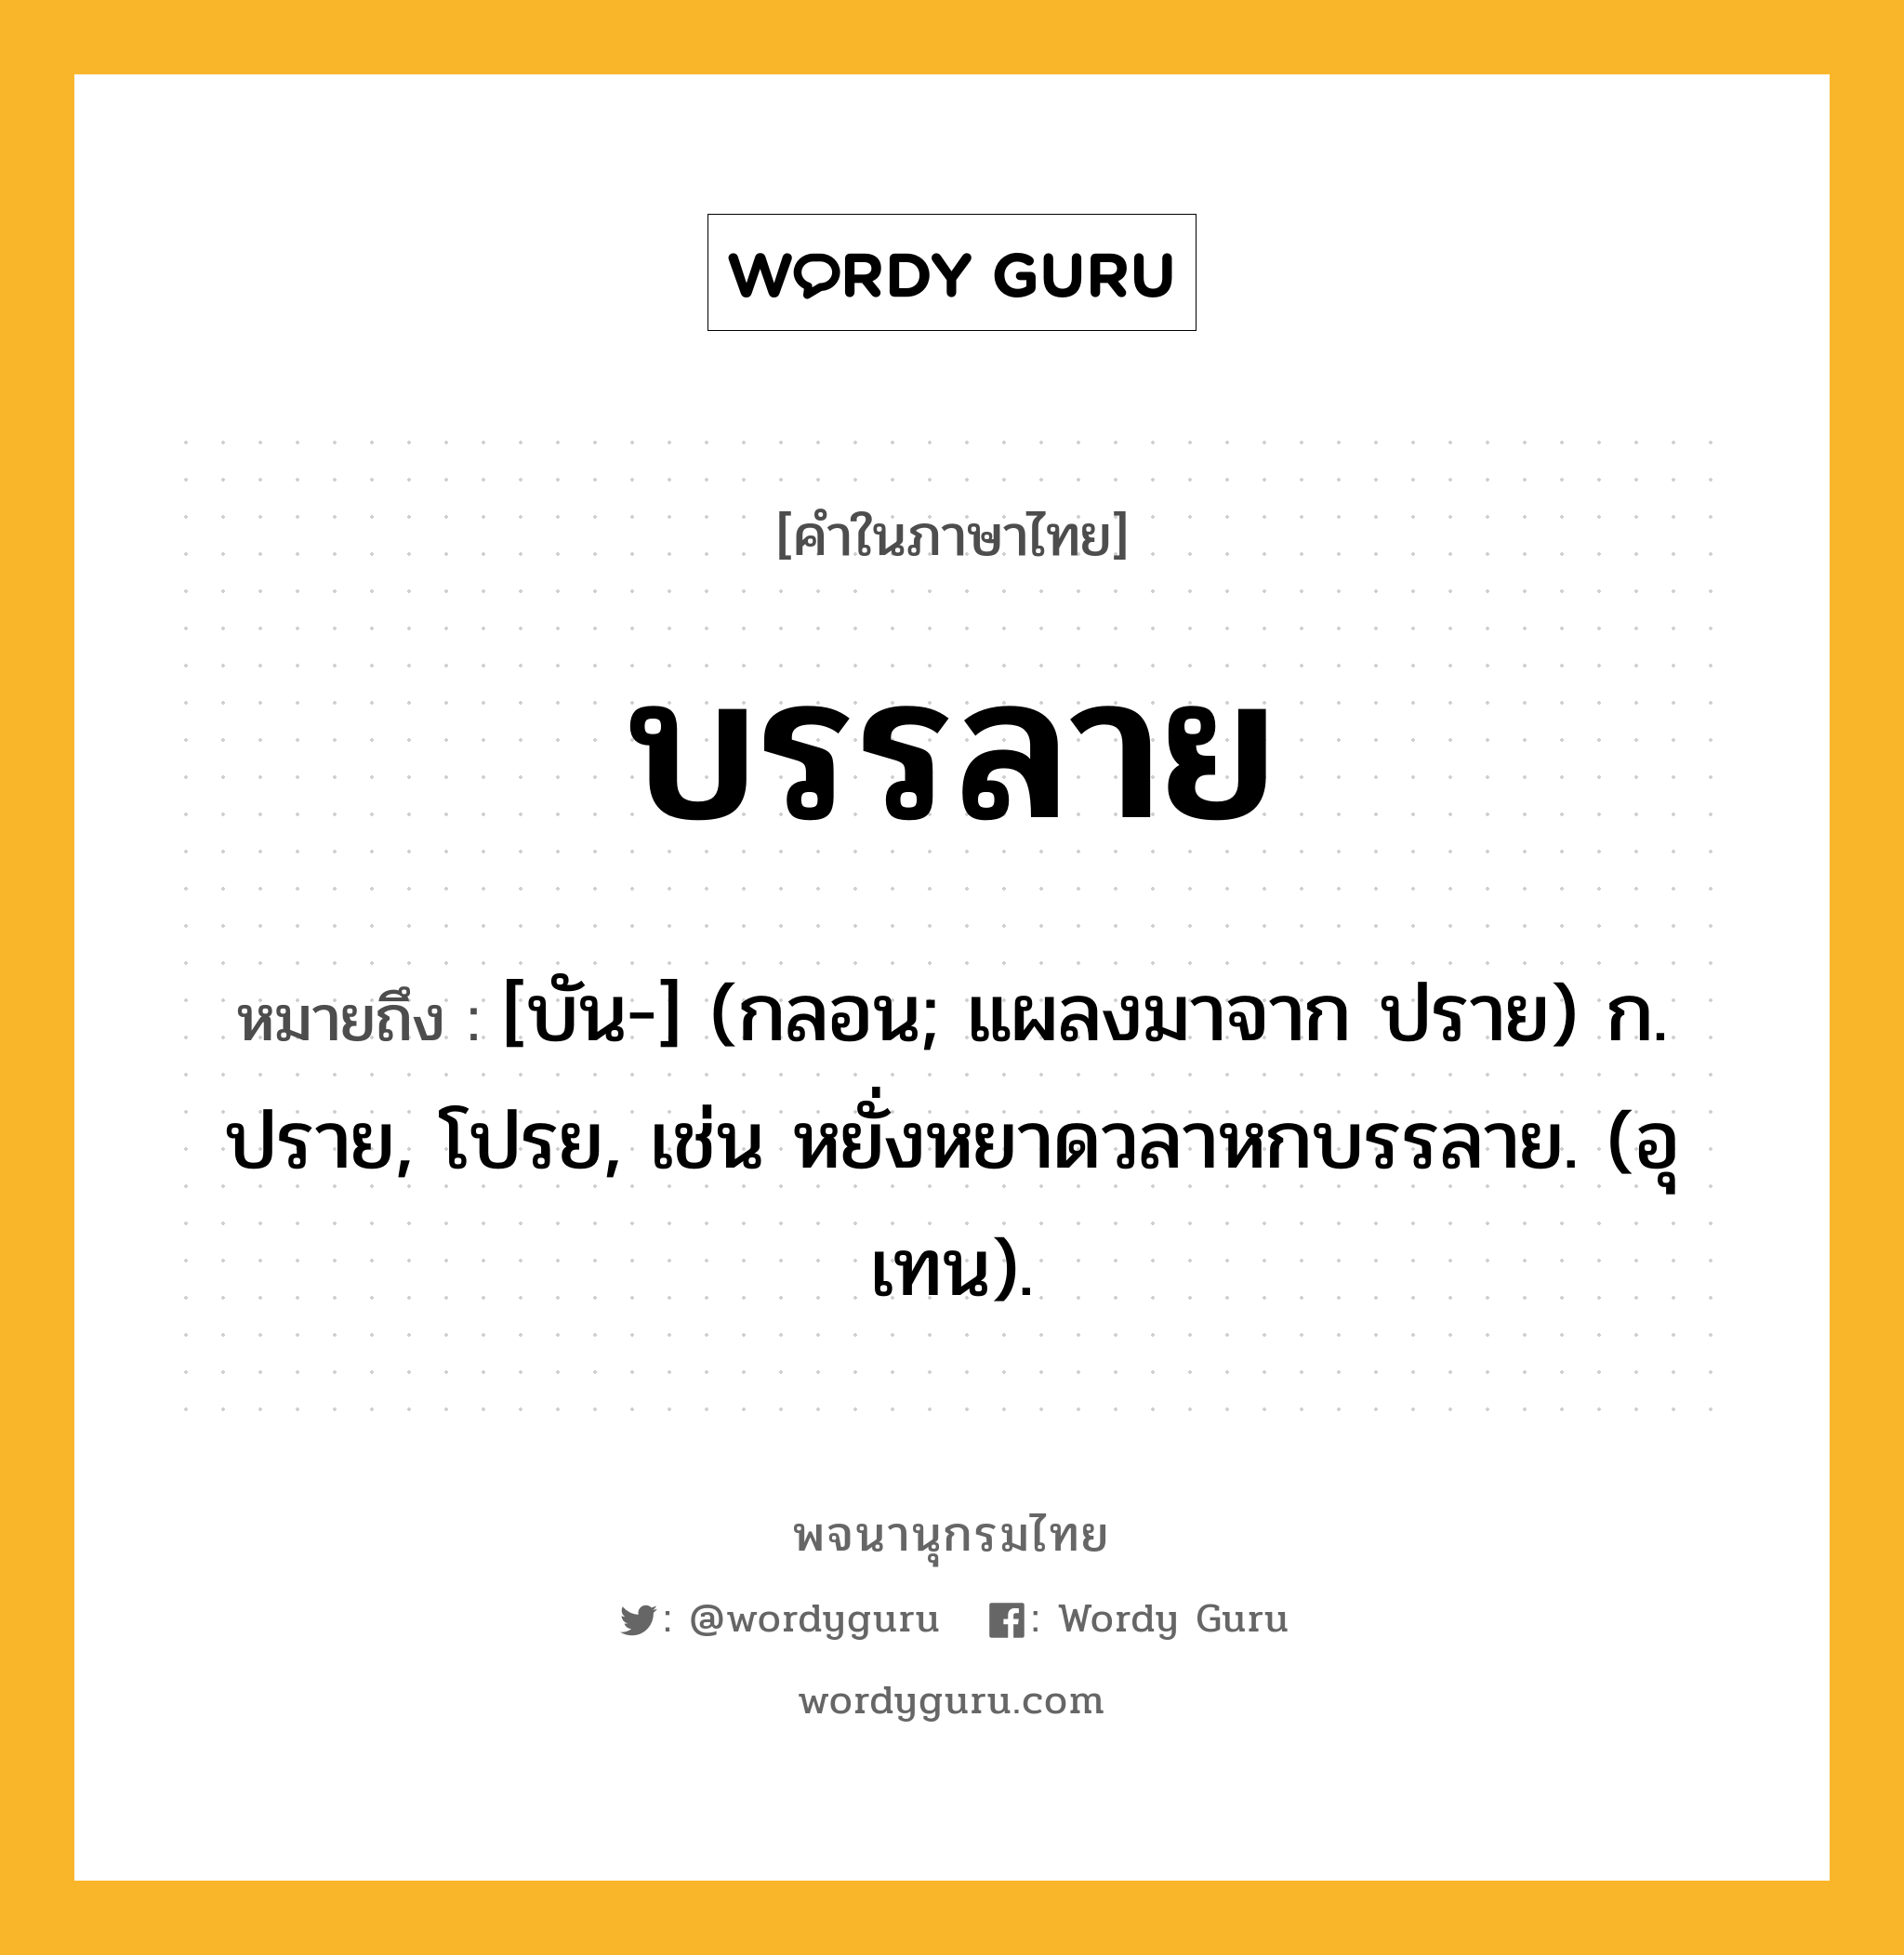 บรรลาย หมายถึงอะไร?, คำในภาษาไทย บรรลาย หมายถึง [บัน-] (กลอน; แผลงมาจาก ปราย) ก. ปราย, โปรย, เช่น หยั่งหยาดวลาหกบรรลาย. (อุเทน).